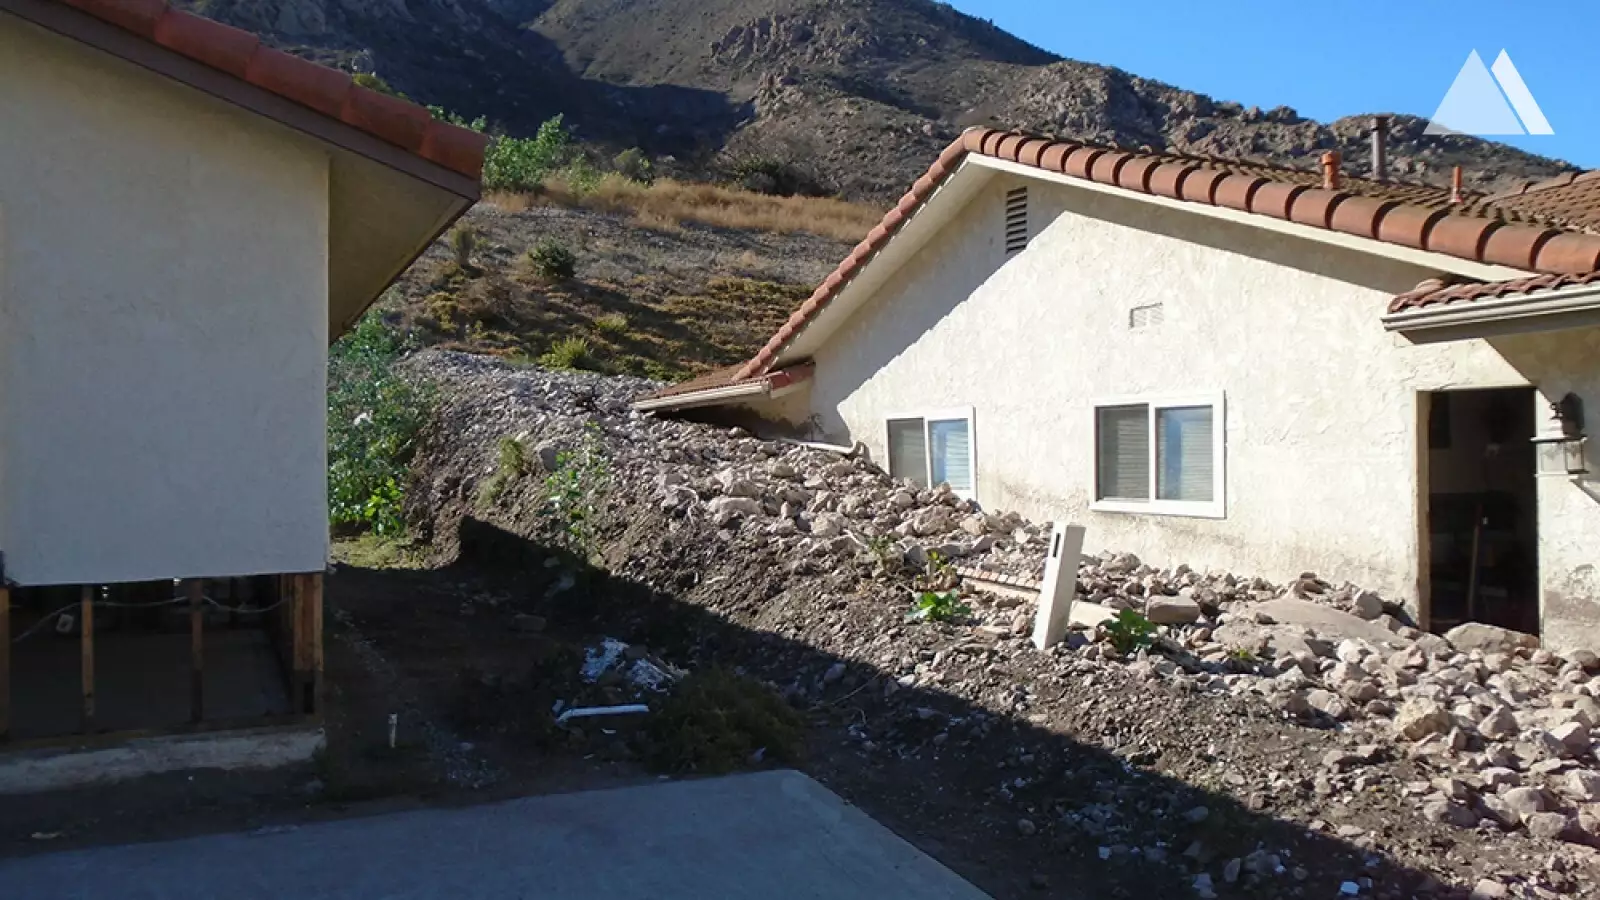 Protecţia împotriva torenţilor şi a alunecărilor superficiale - Camarillo Springs Emergency 2015